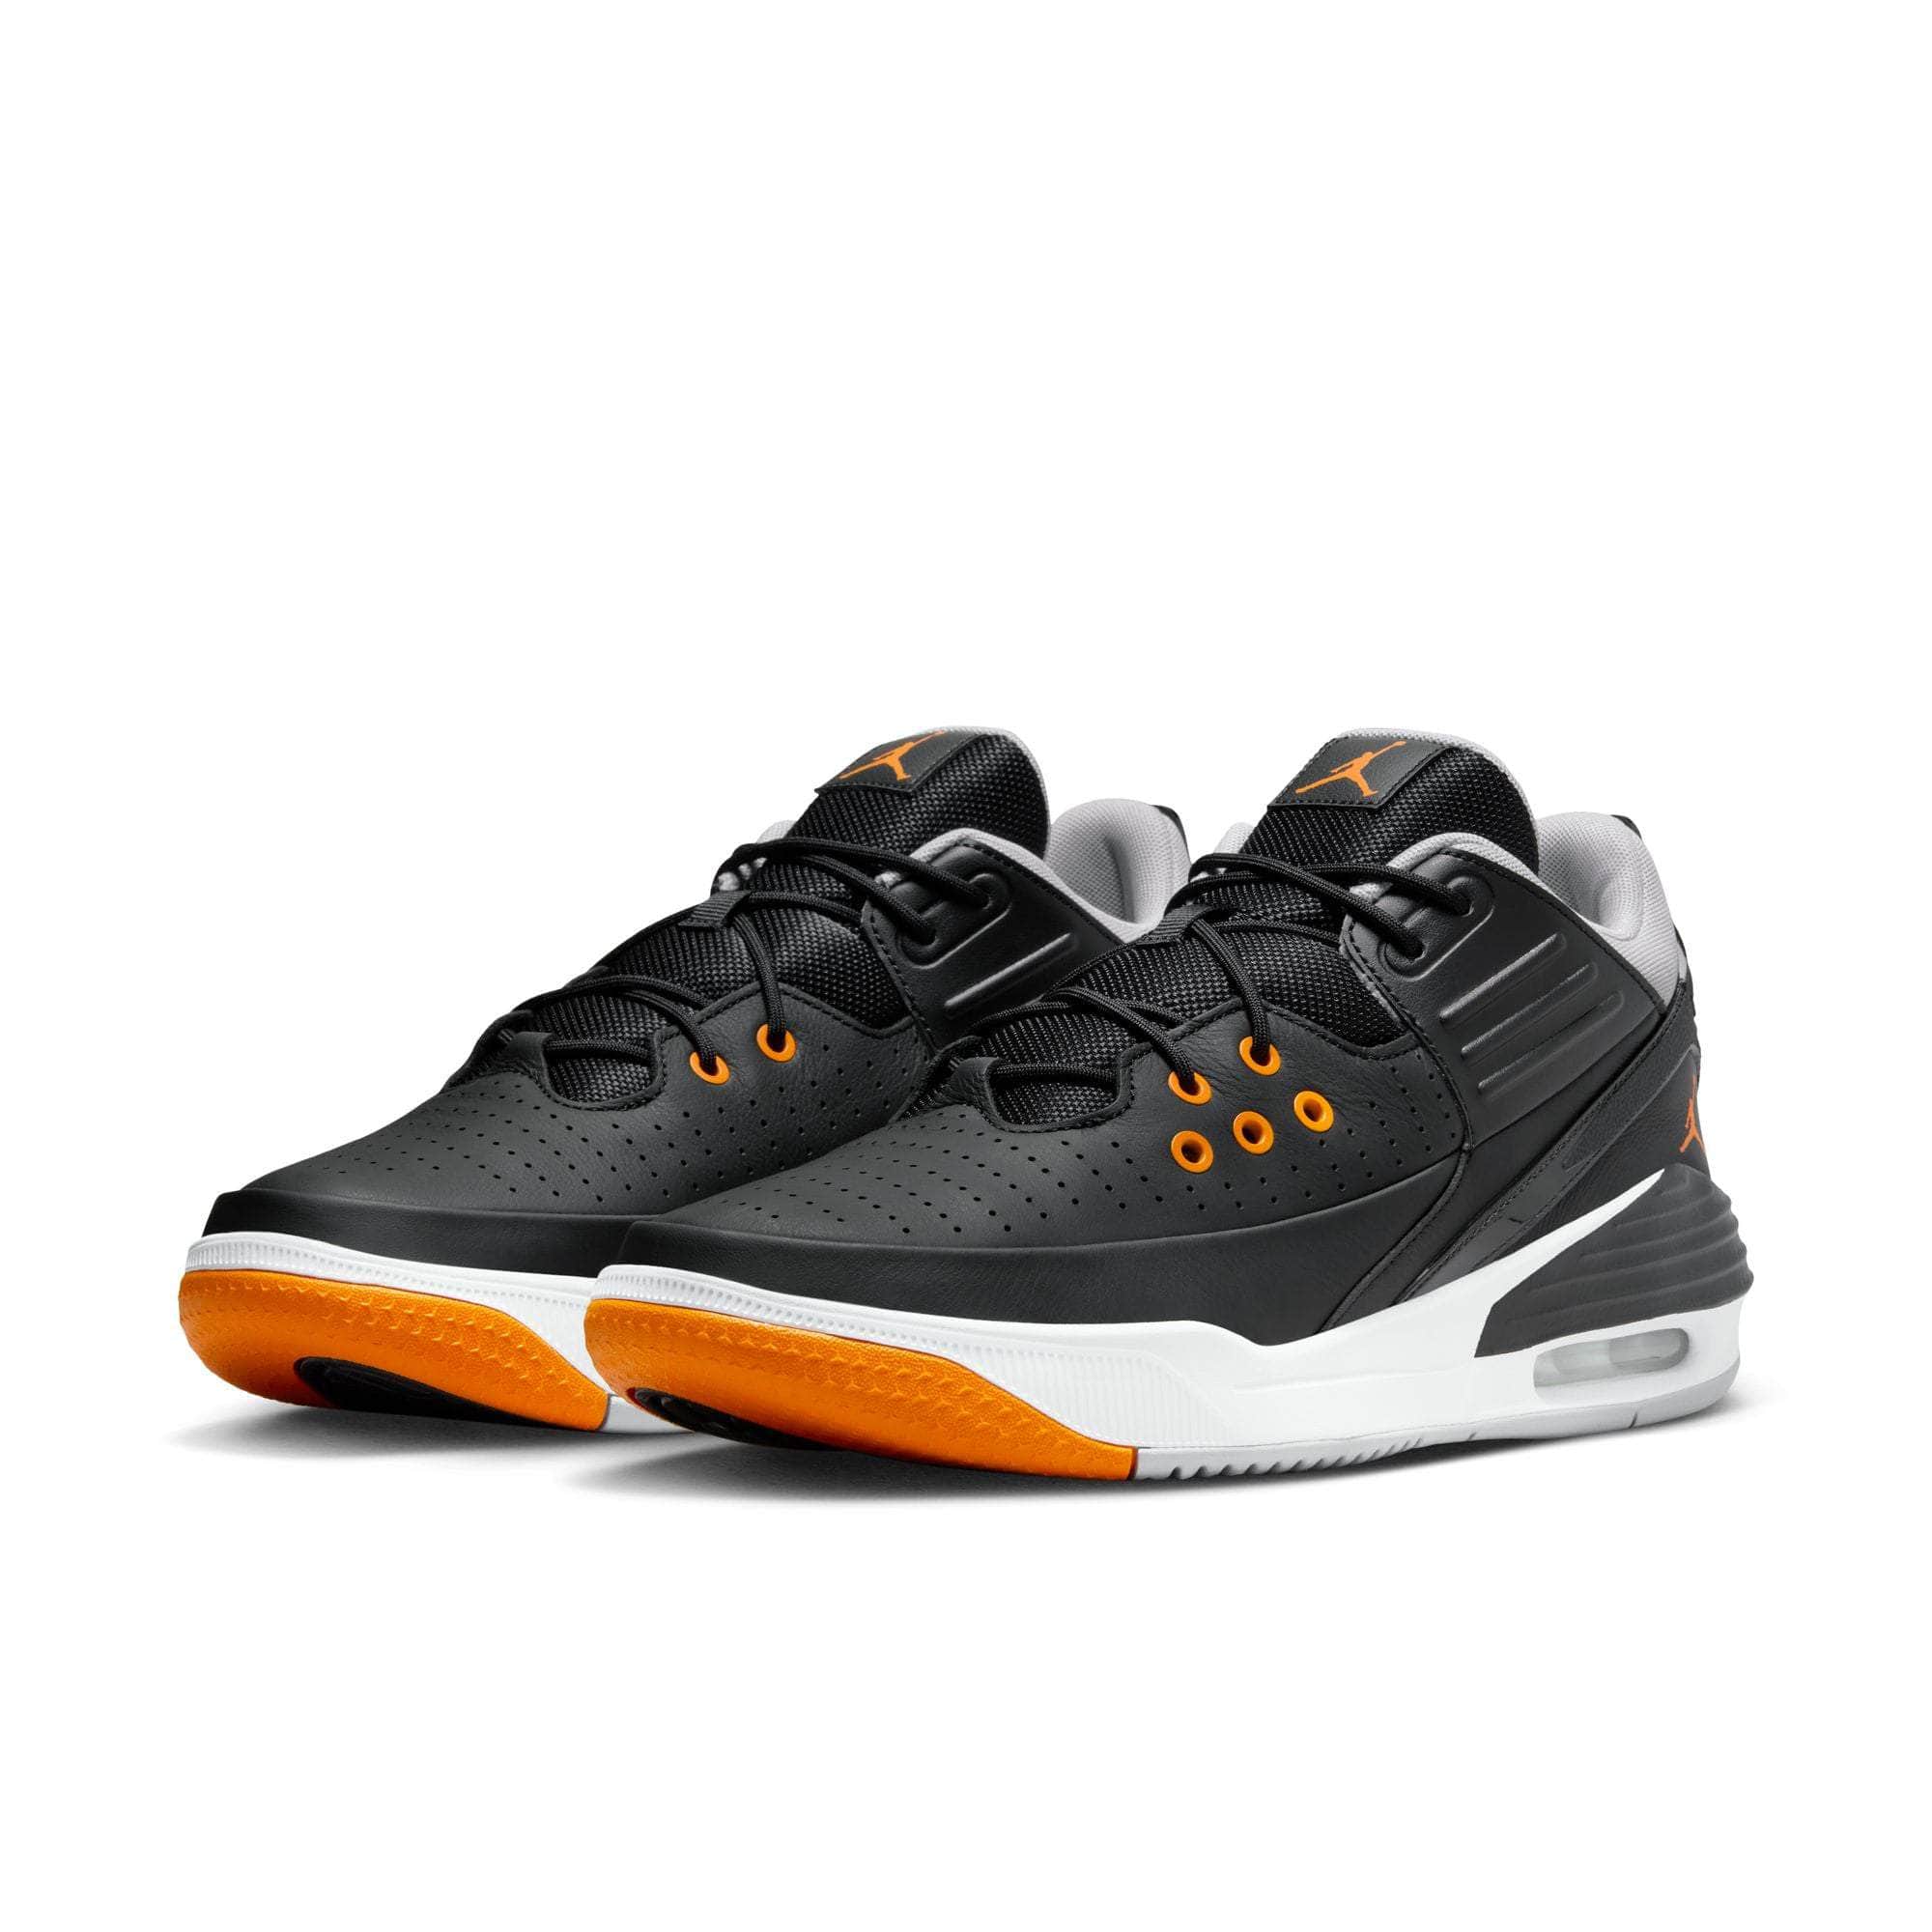 Air Jordan Footwear Air Jordan Max Aura 5 "Magma Orange" - Men's